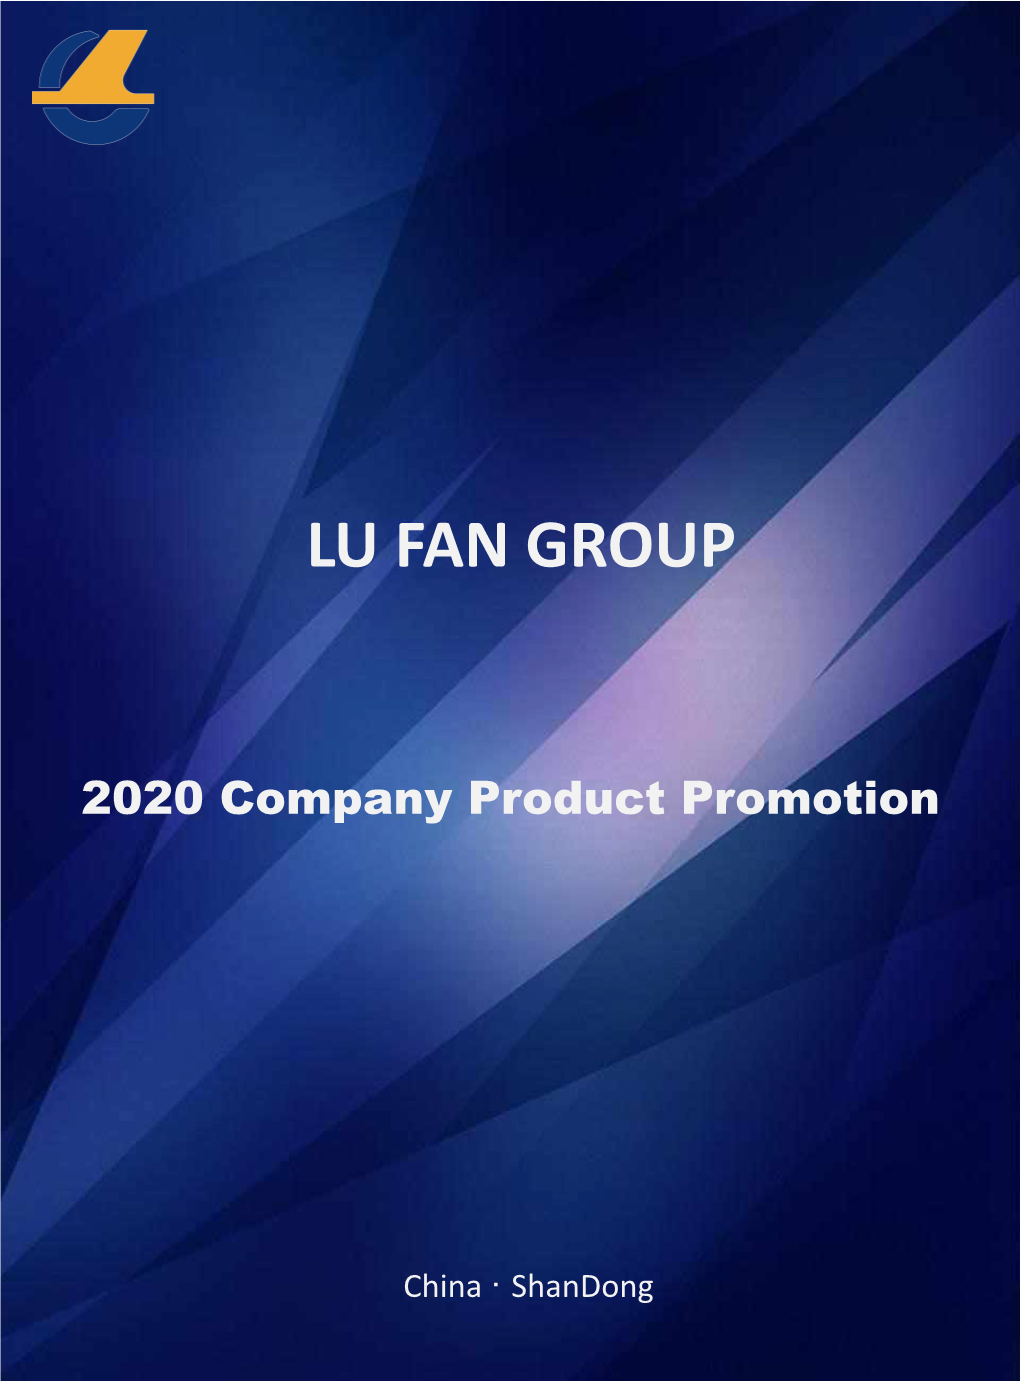 Lu Fan Group